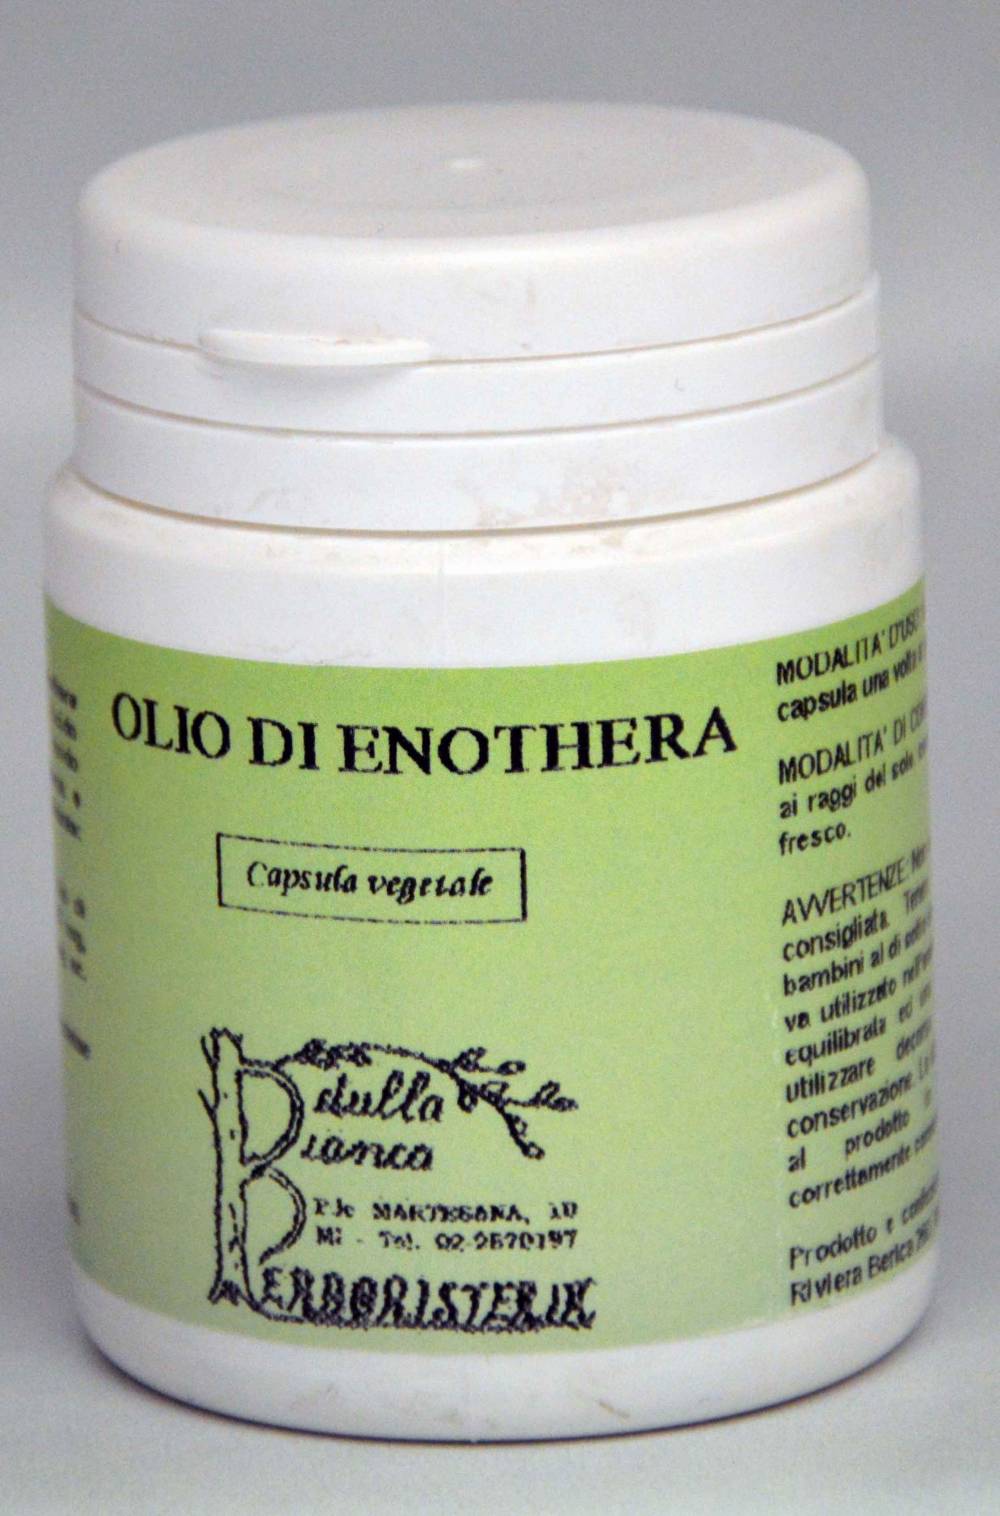 Olio di Enothera capsule